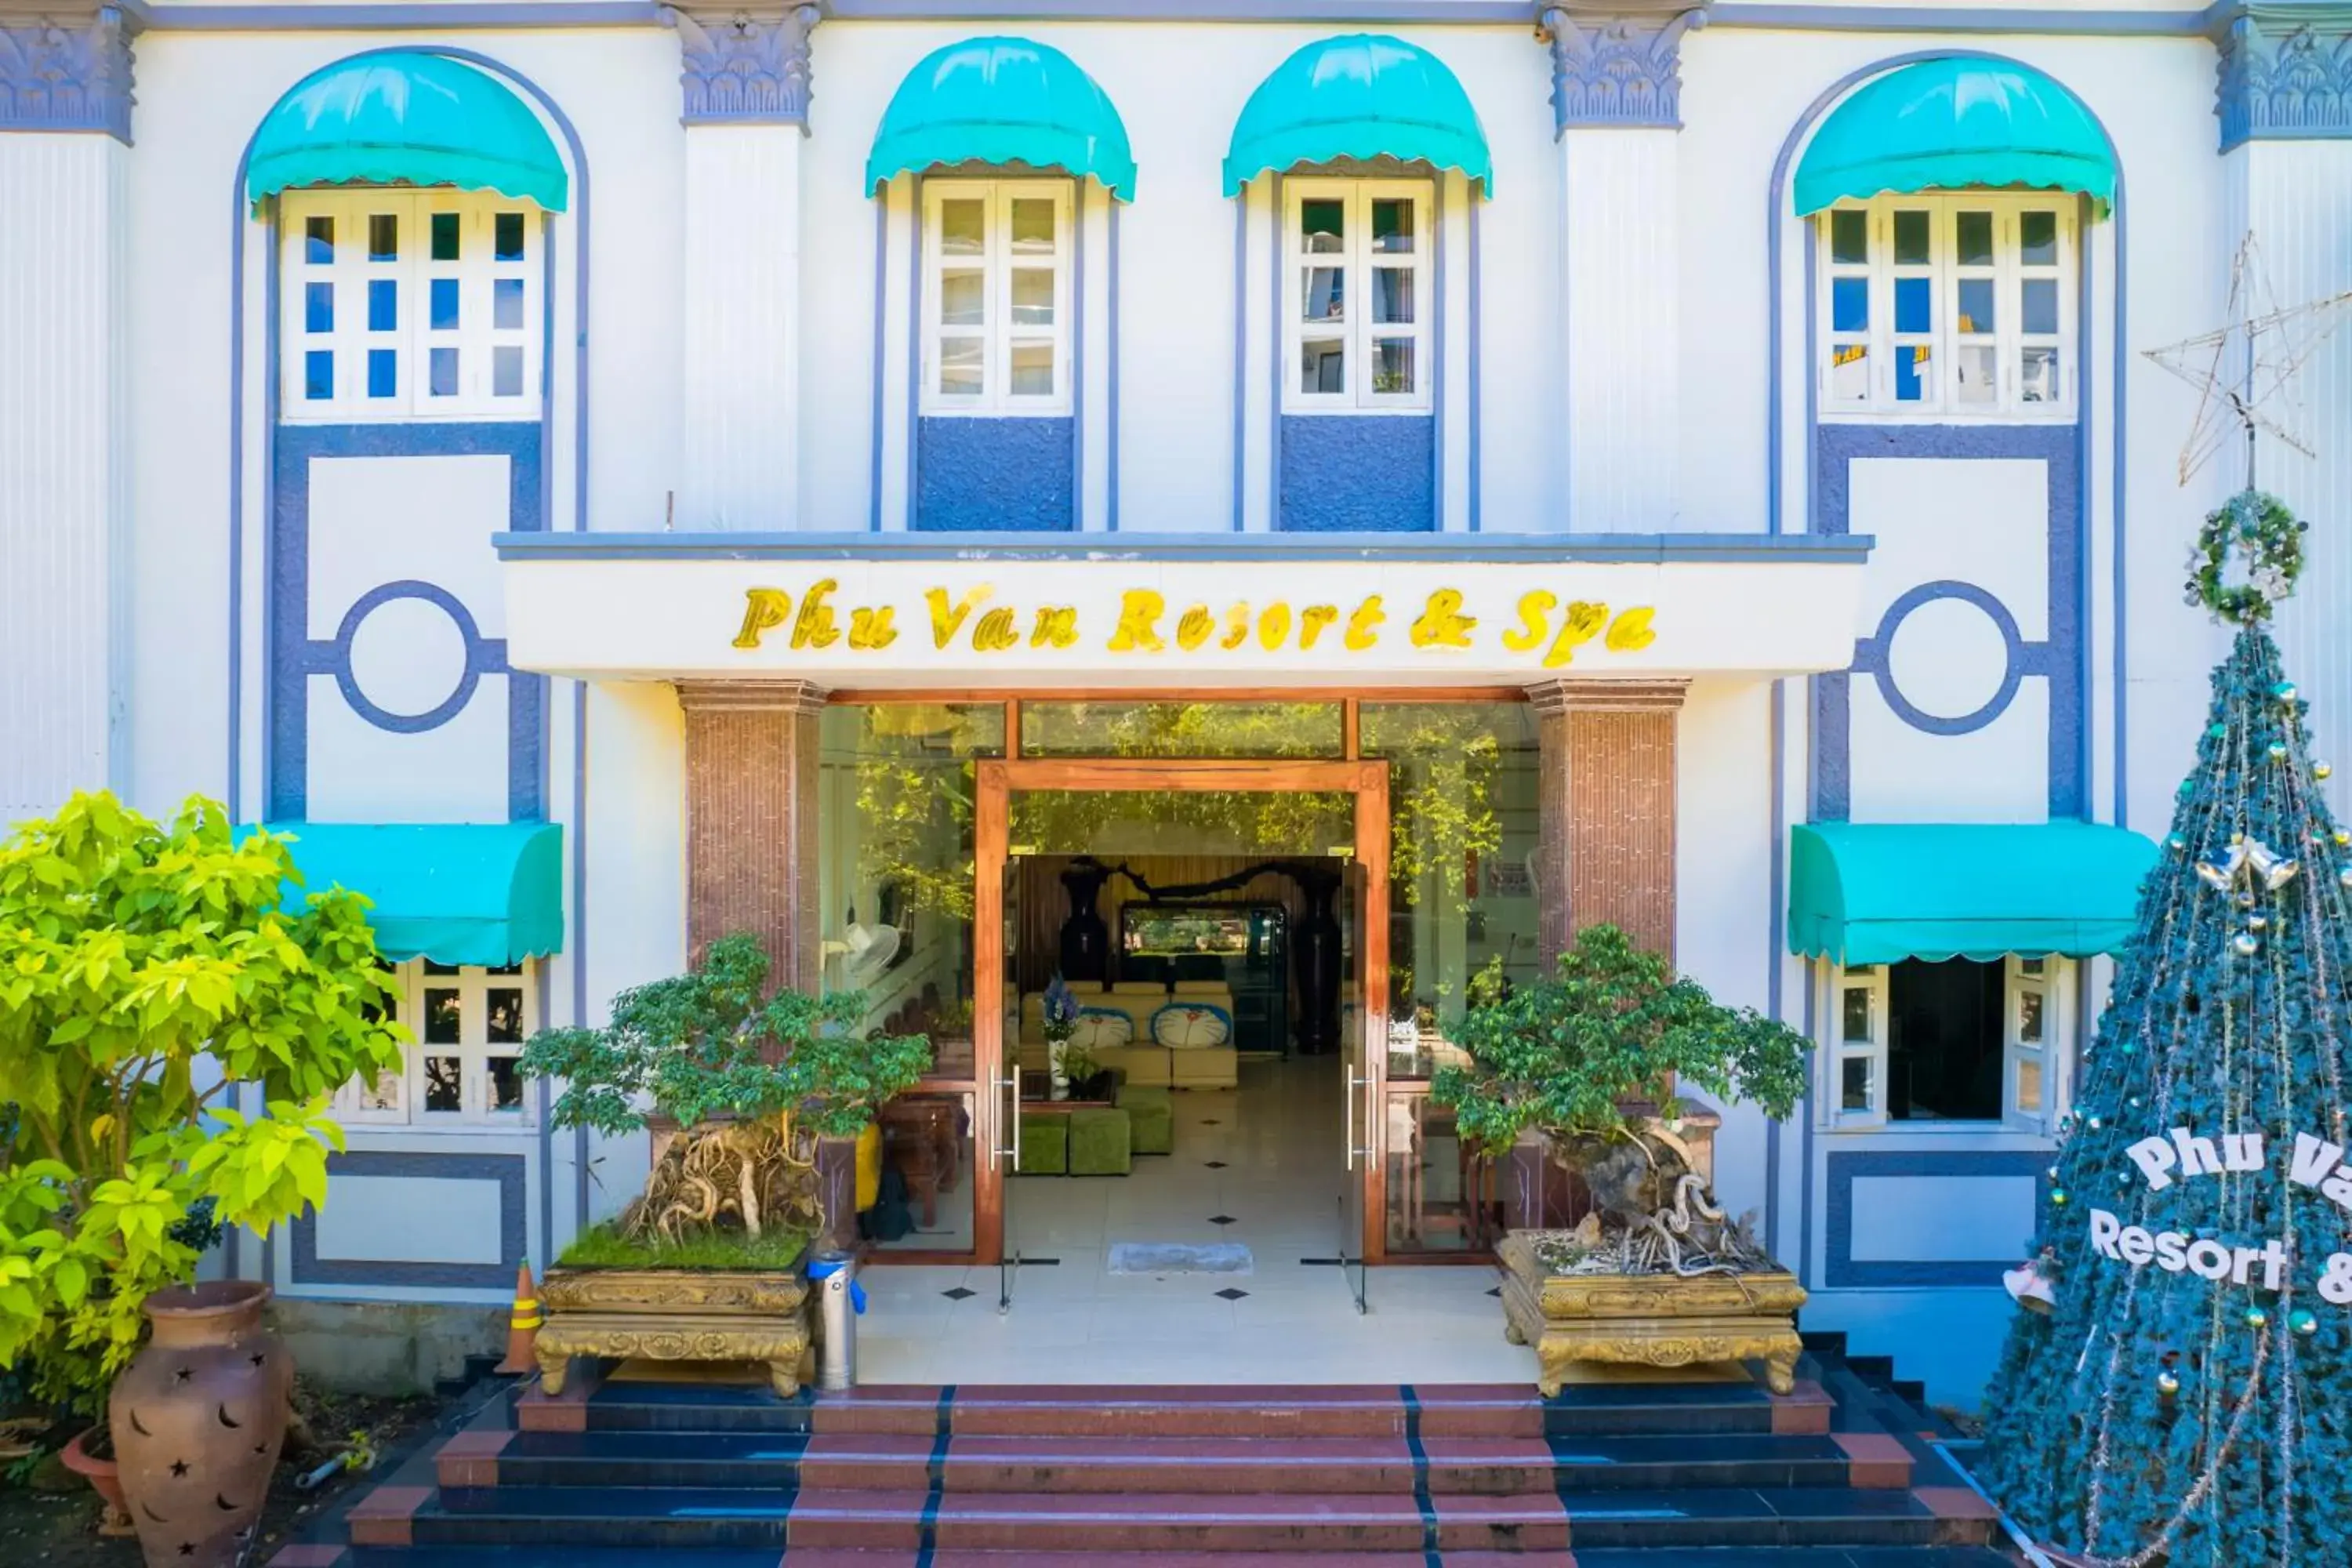 Facade/entrance in Phu Van Resort & Spa